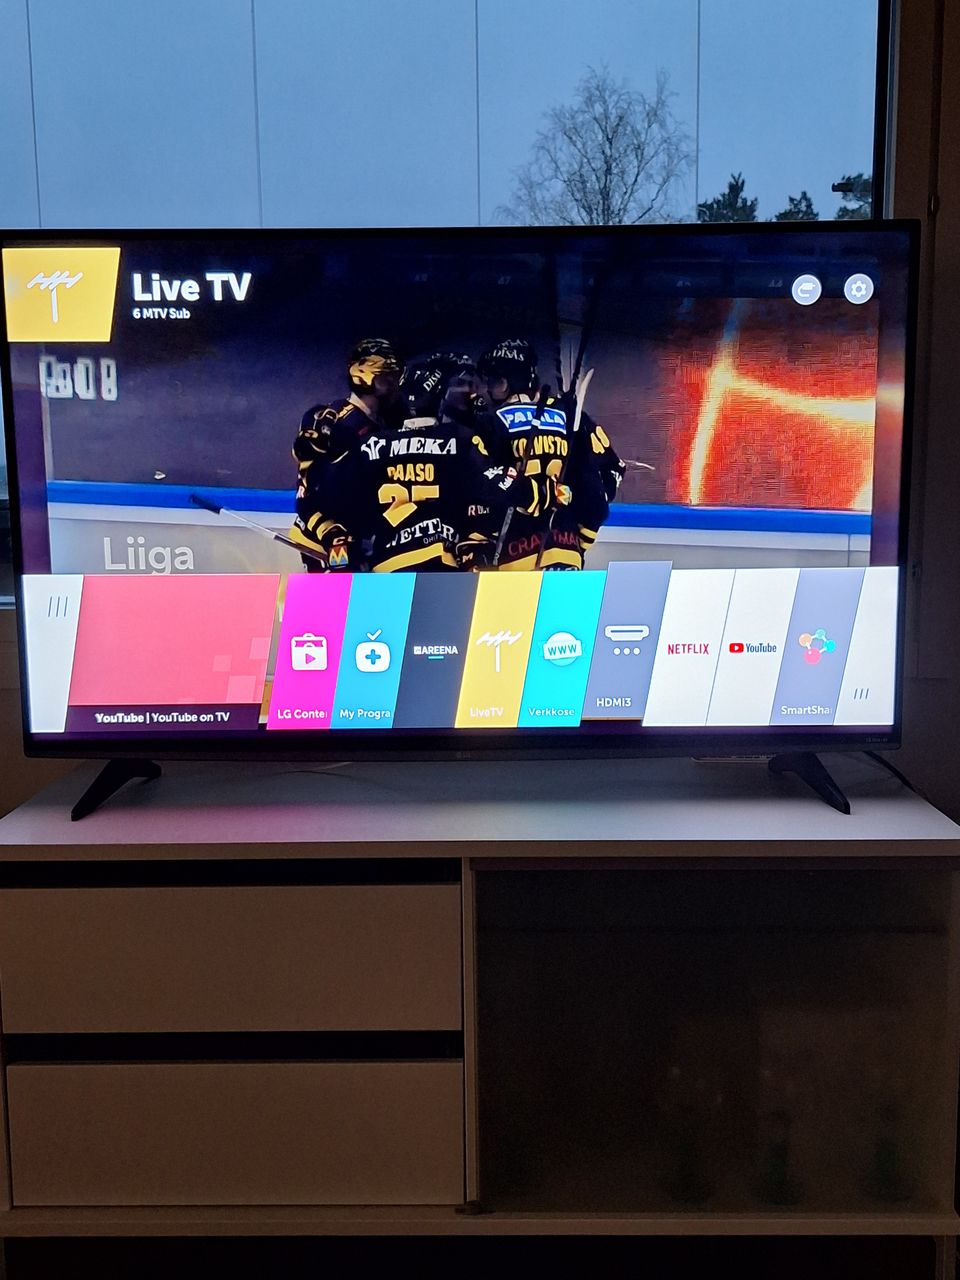 LG 50 ÄLY TV